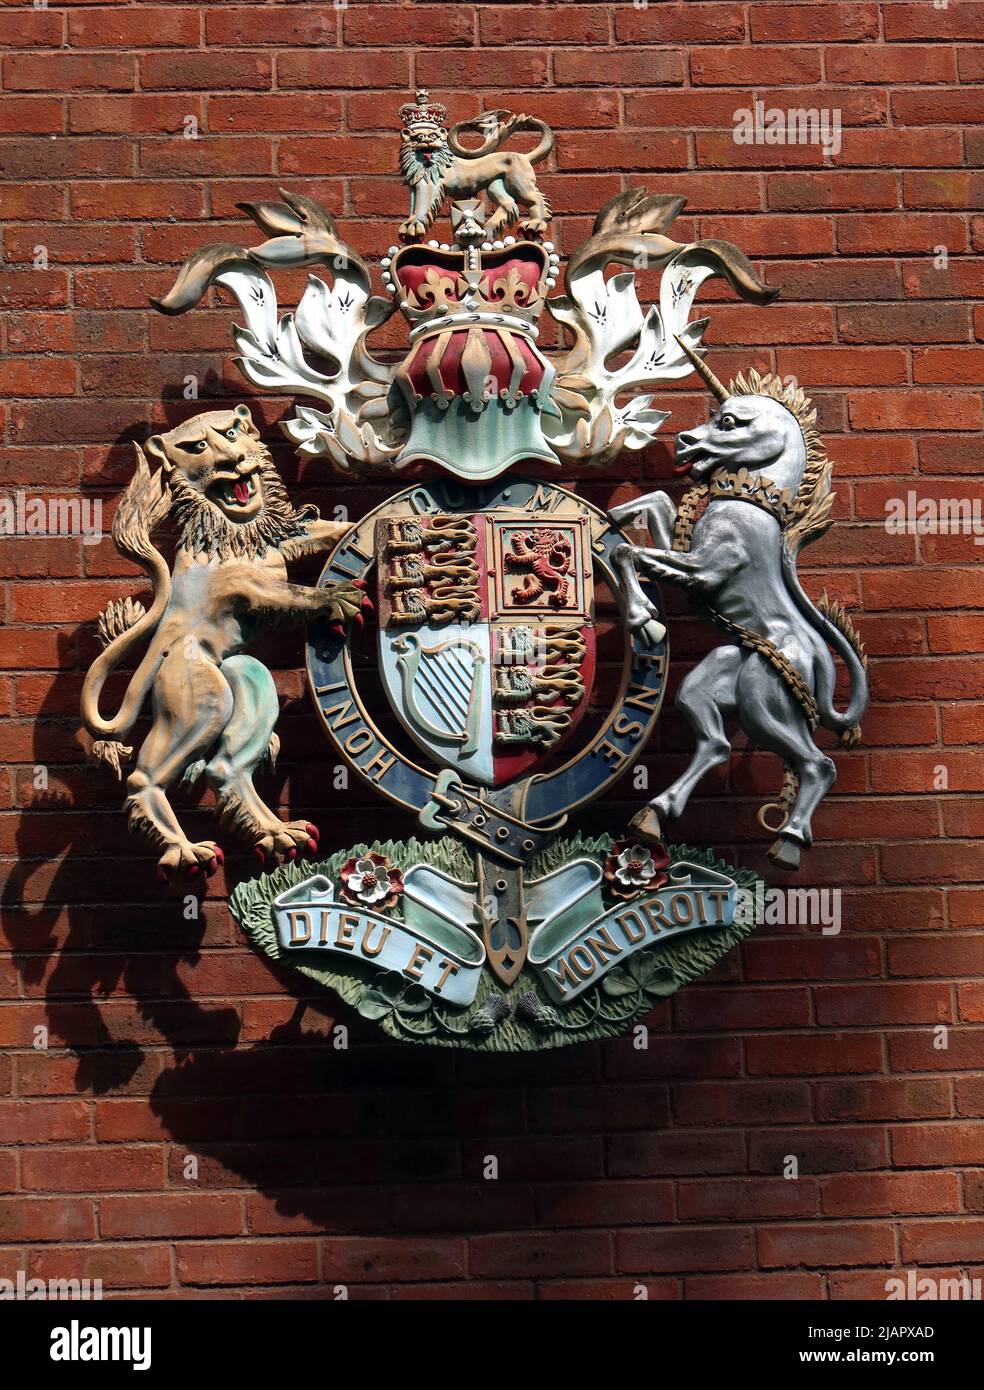 Dieu Et Mon Droit crest at Warrington Law Courts centre, Legh St, Warrington, Cheshire, England, UK, WA1 1UR Stock Photo